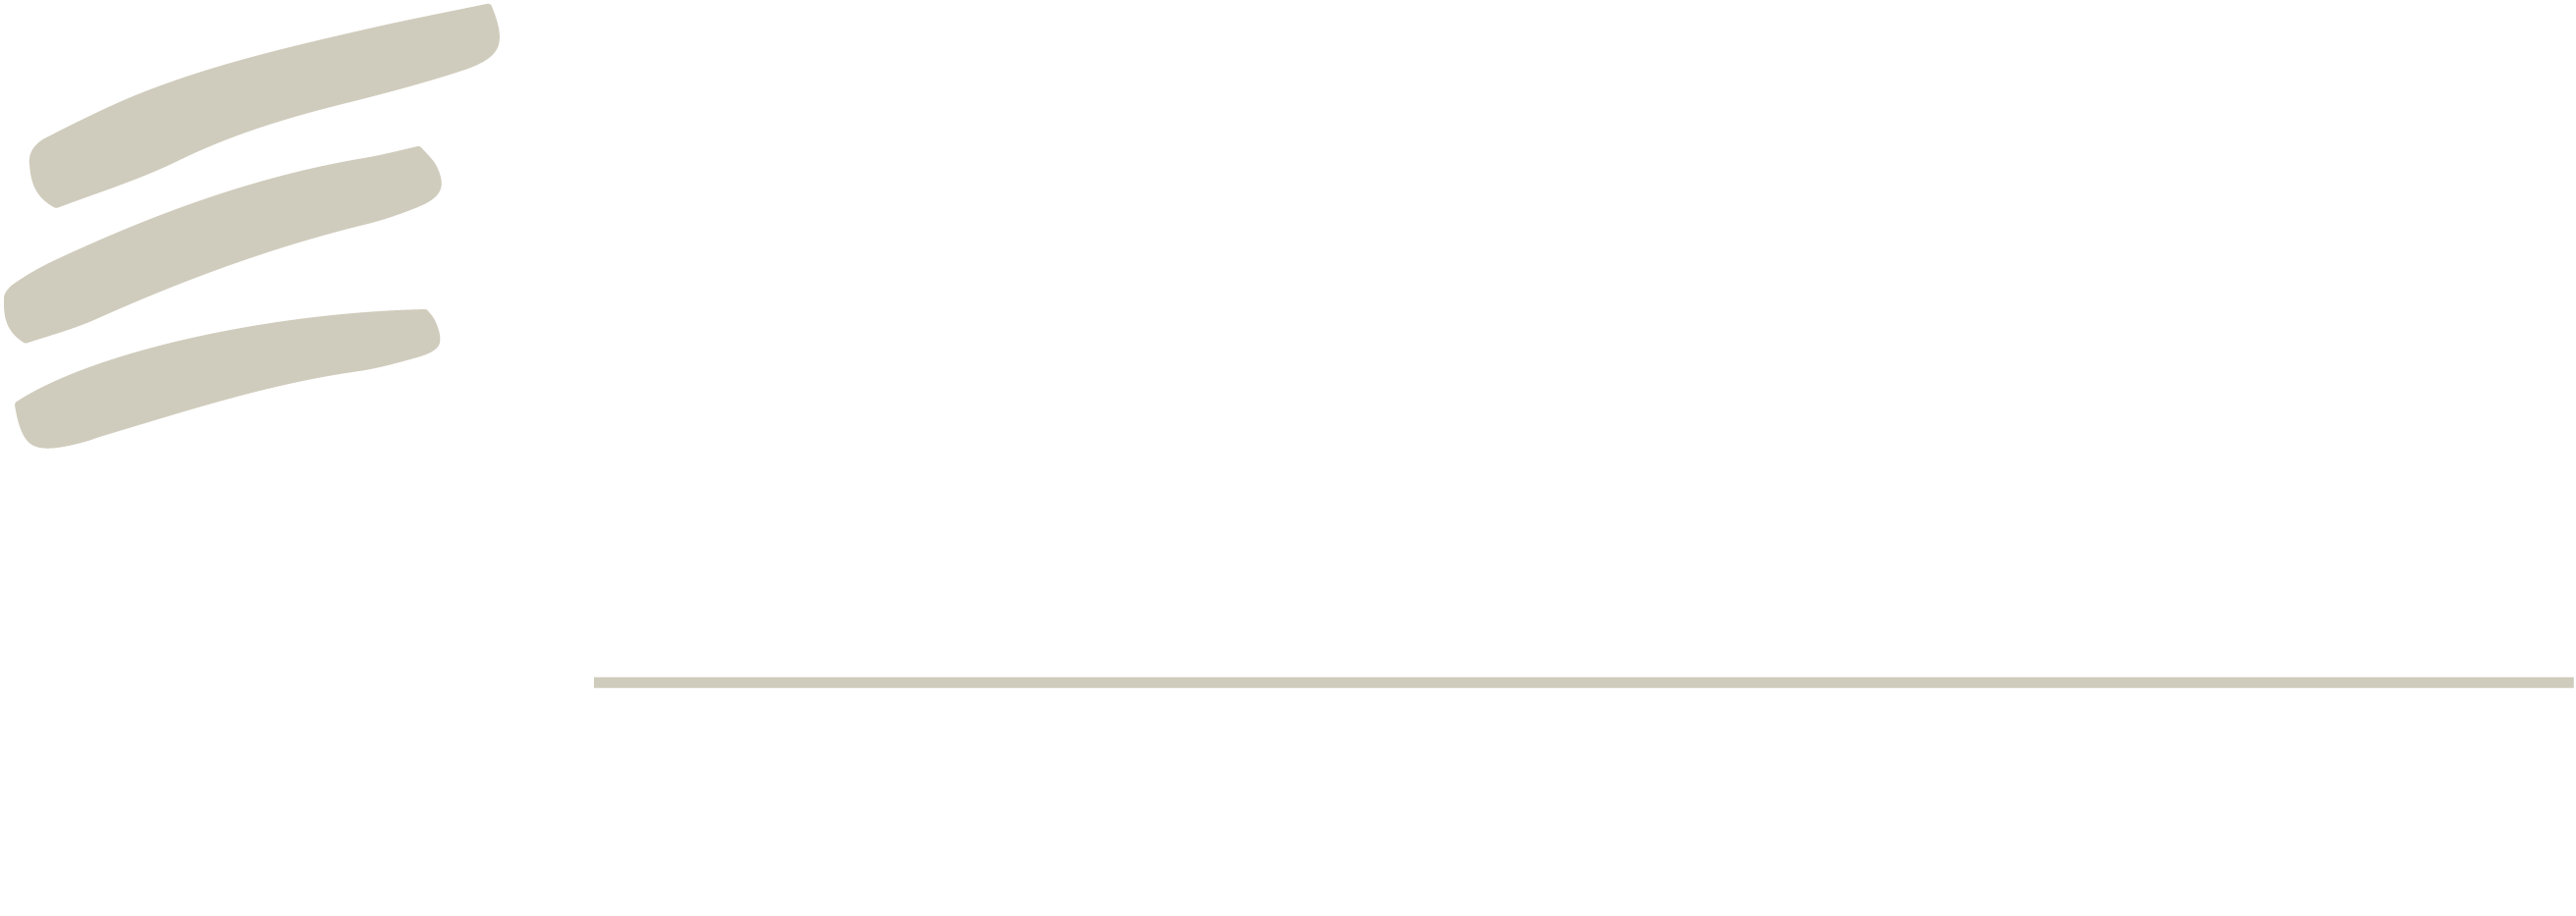 Echelon at 6311 Romaine